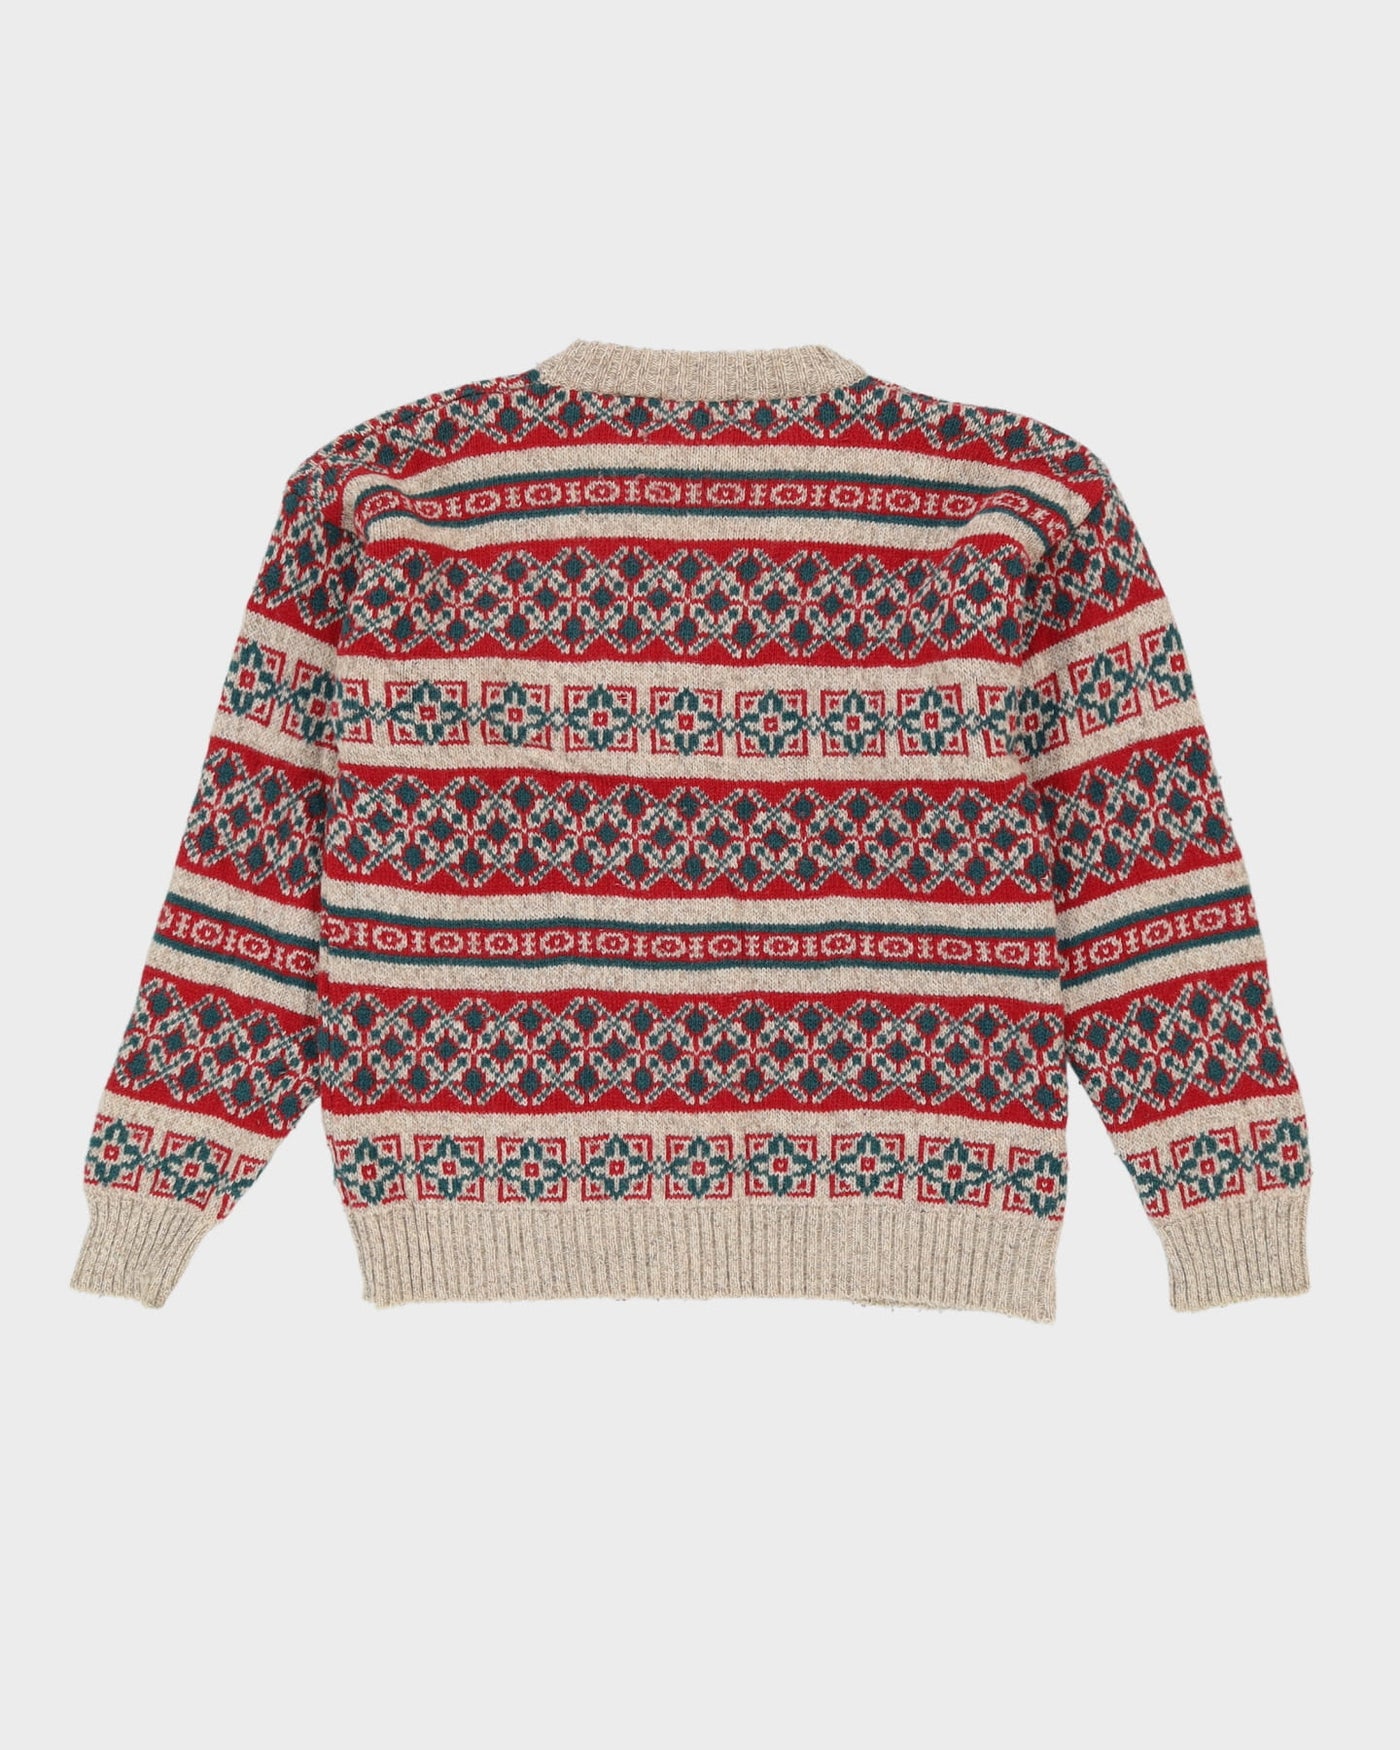 Eddie Bauer Red / Beige Patterned Knit Sweatshirt - L